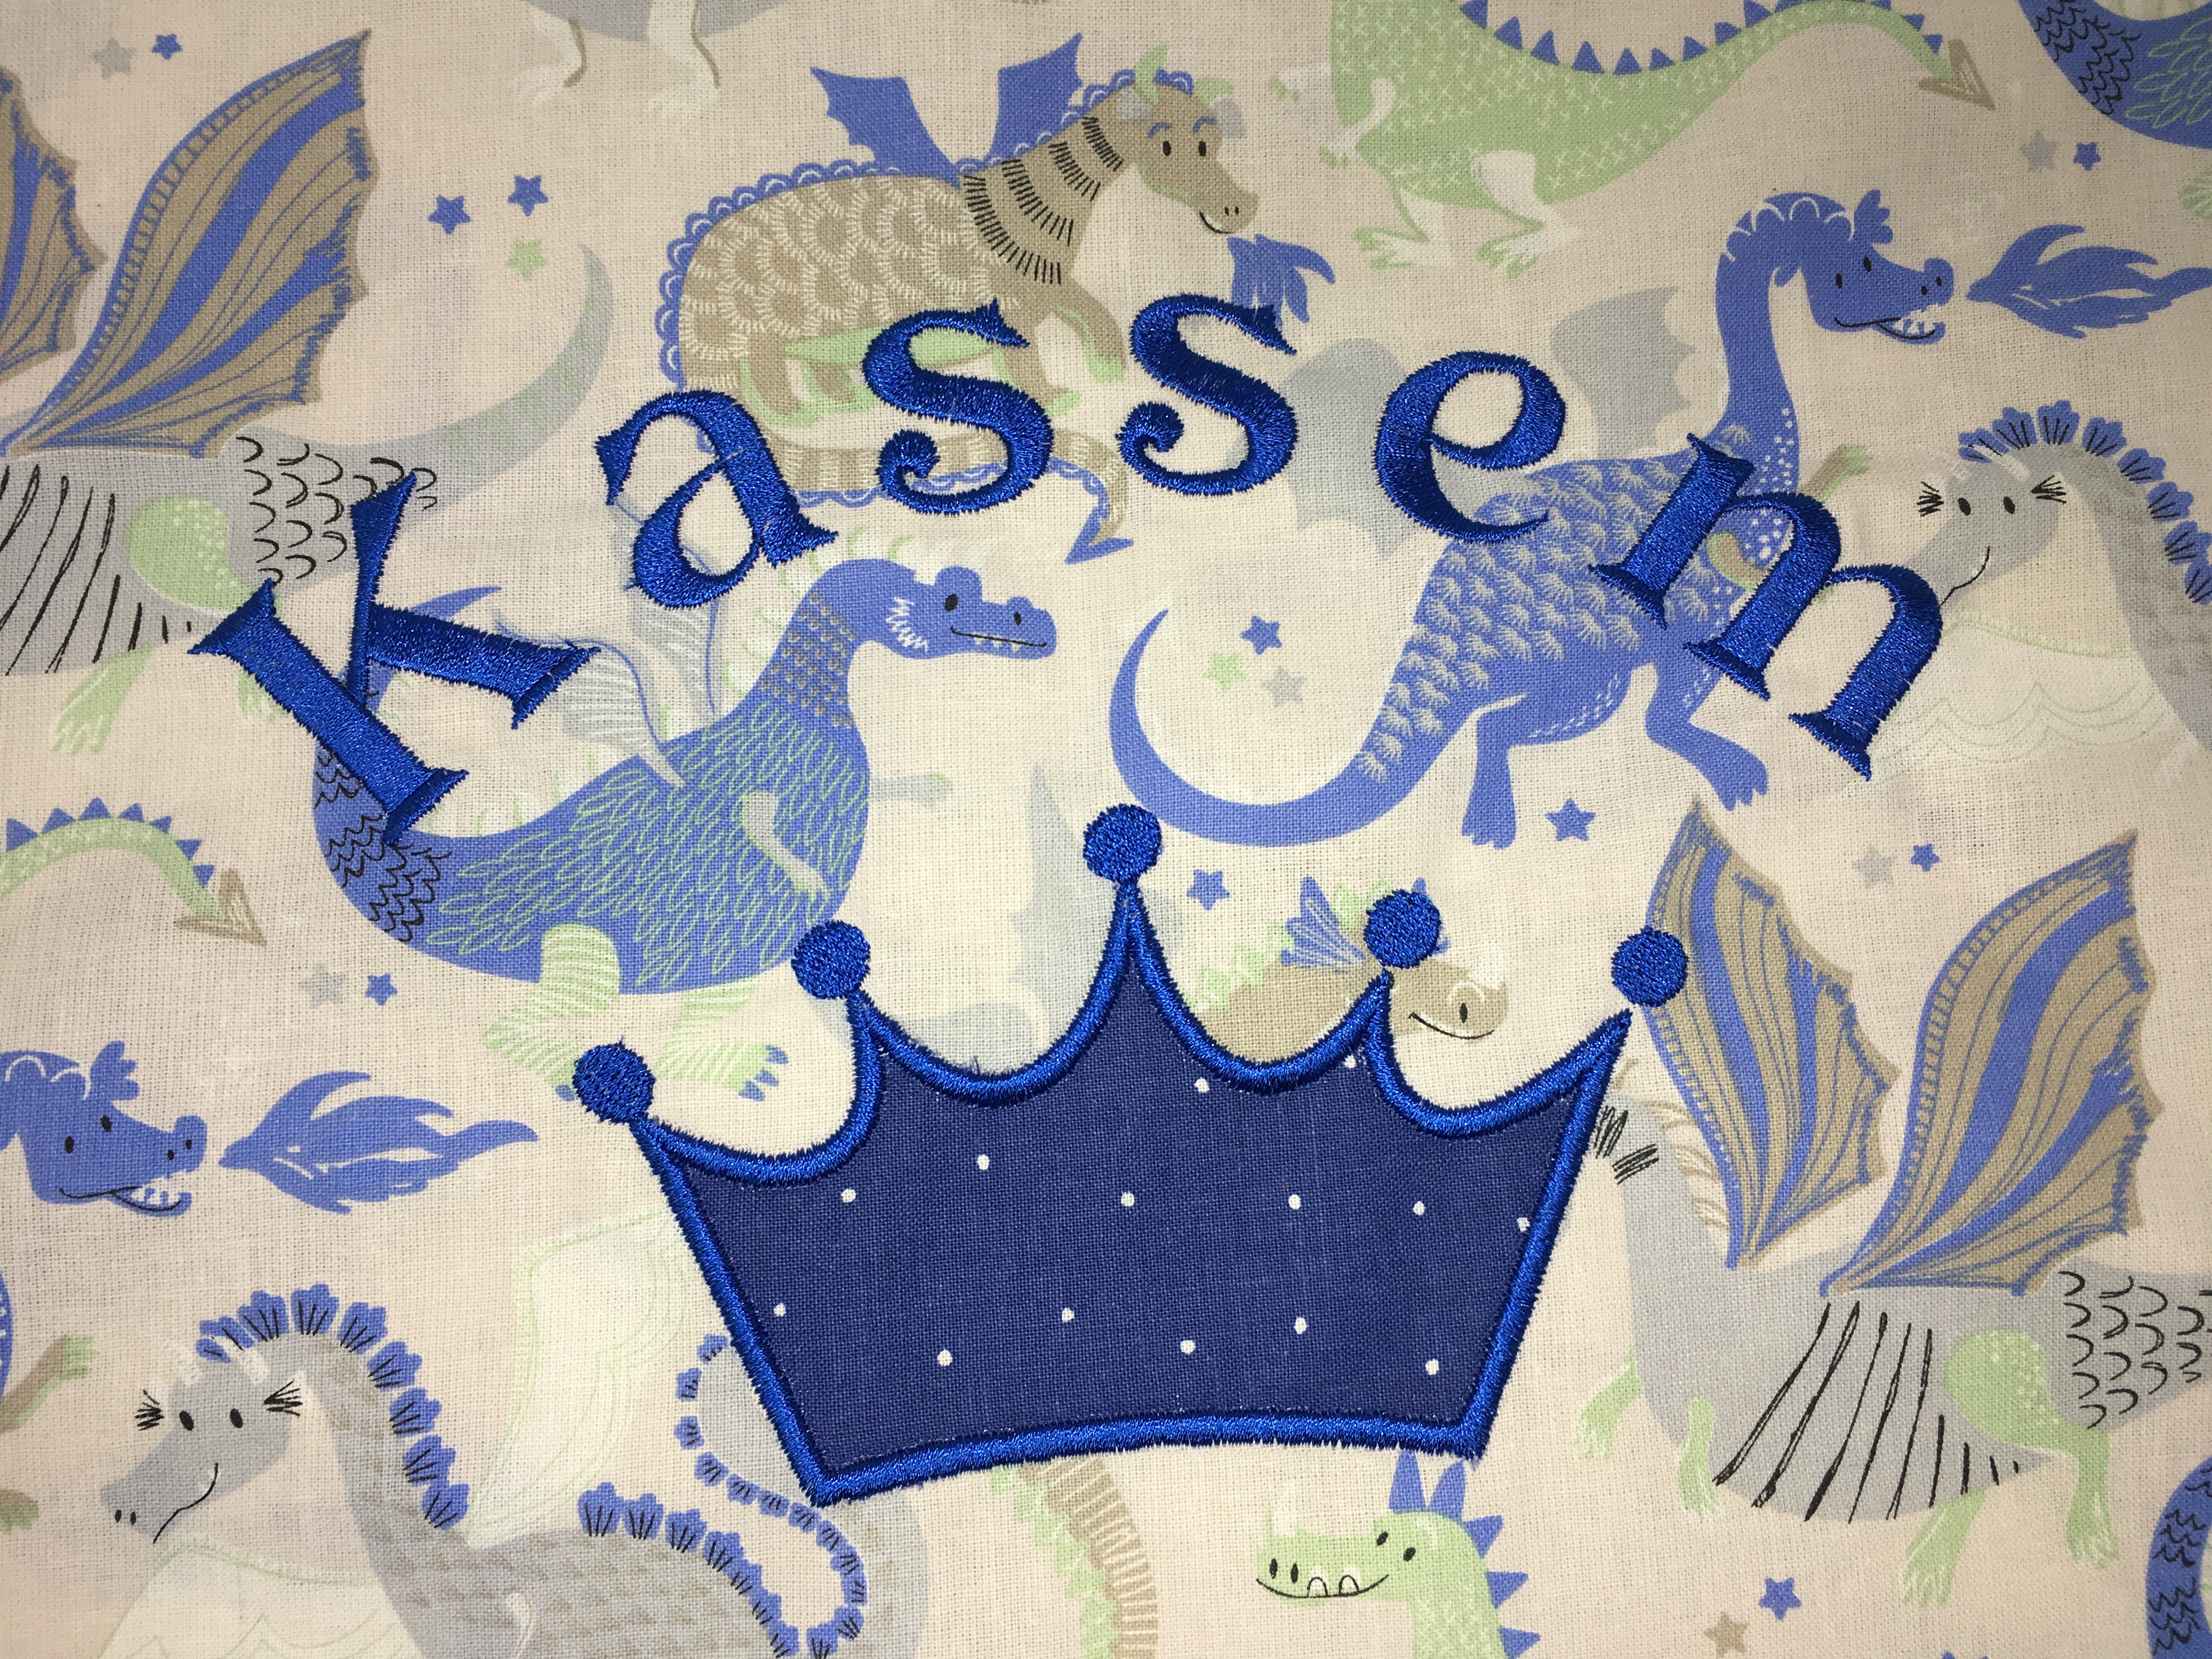  Deko Kissen Krone Kissenhülle Kissenbezug 100% Baumwolle Personalisiert Name Bestickung Stickerei 